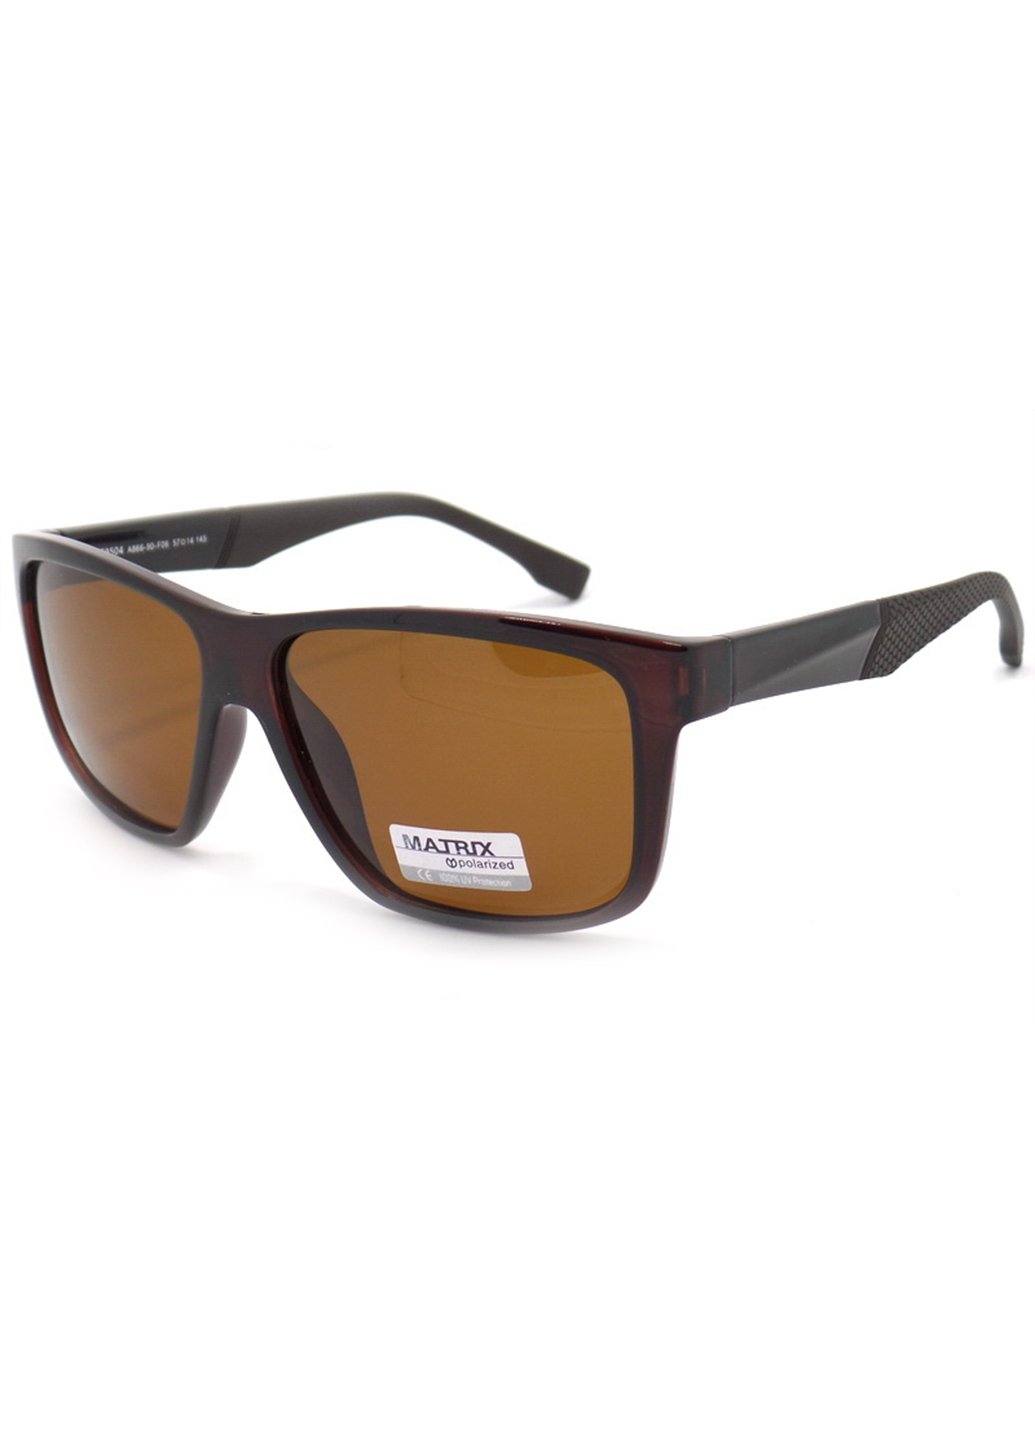 Купить Коричневые мужские солнцезащитные очки Matrix с поляризацией MT8504 111015 в интернет-магазине